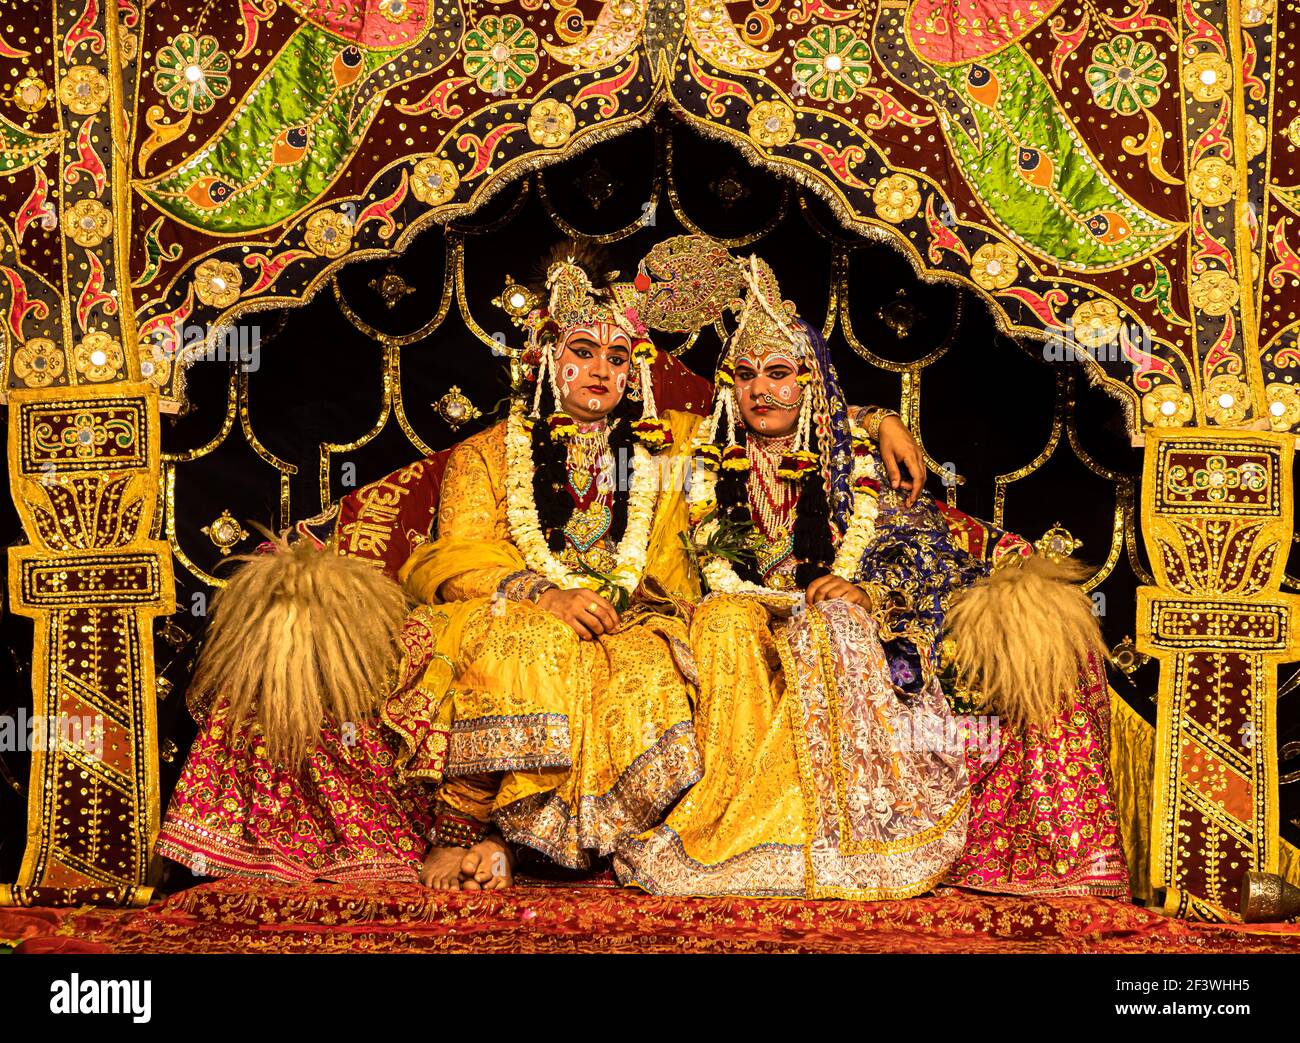 un jeune acteur représentant krishna et radha se marient sur scène avec un accent sélectif sur le sujet et ajoute du bruit et des grains. Banque D'Images